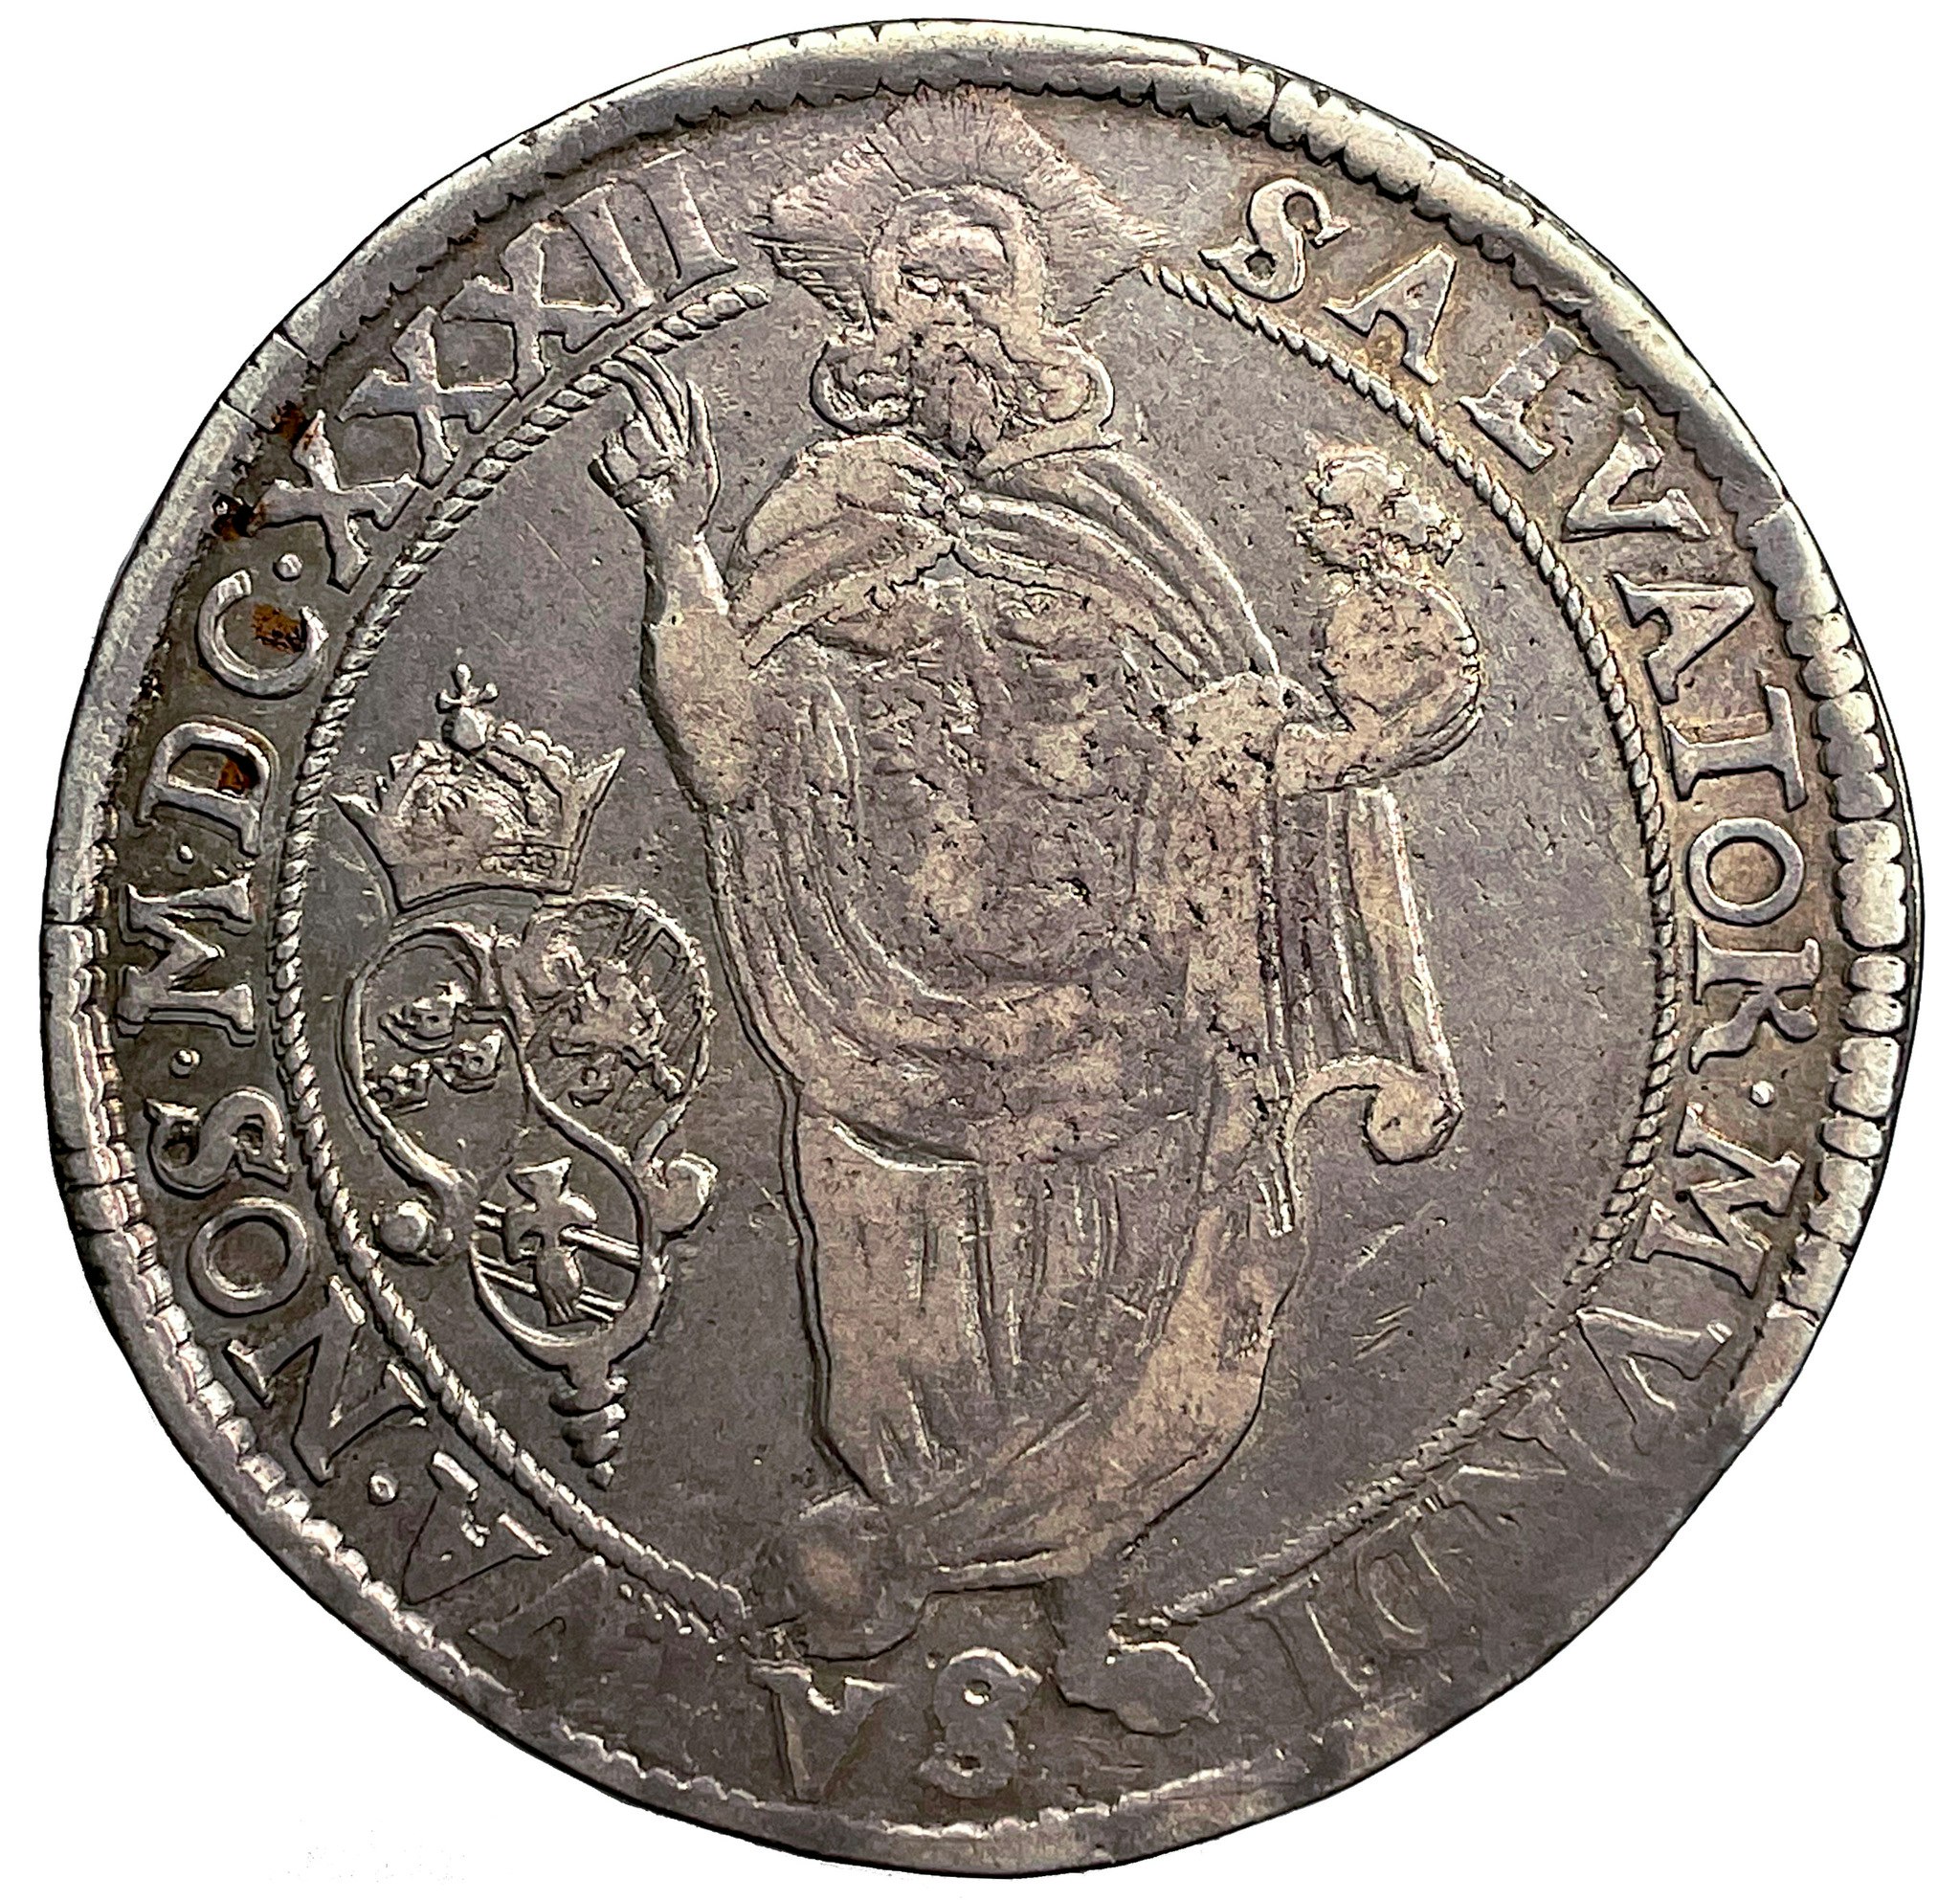 Gustav II Adolf - Riksdaler 1632 med felvända kronor i vapenskölden